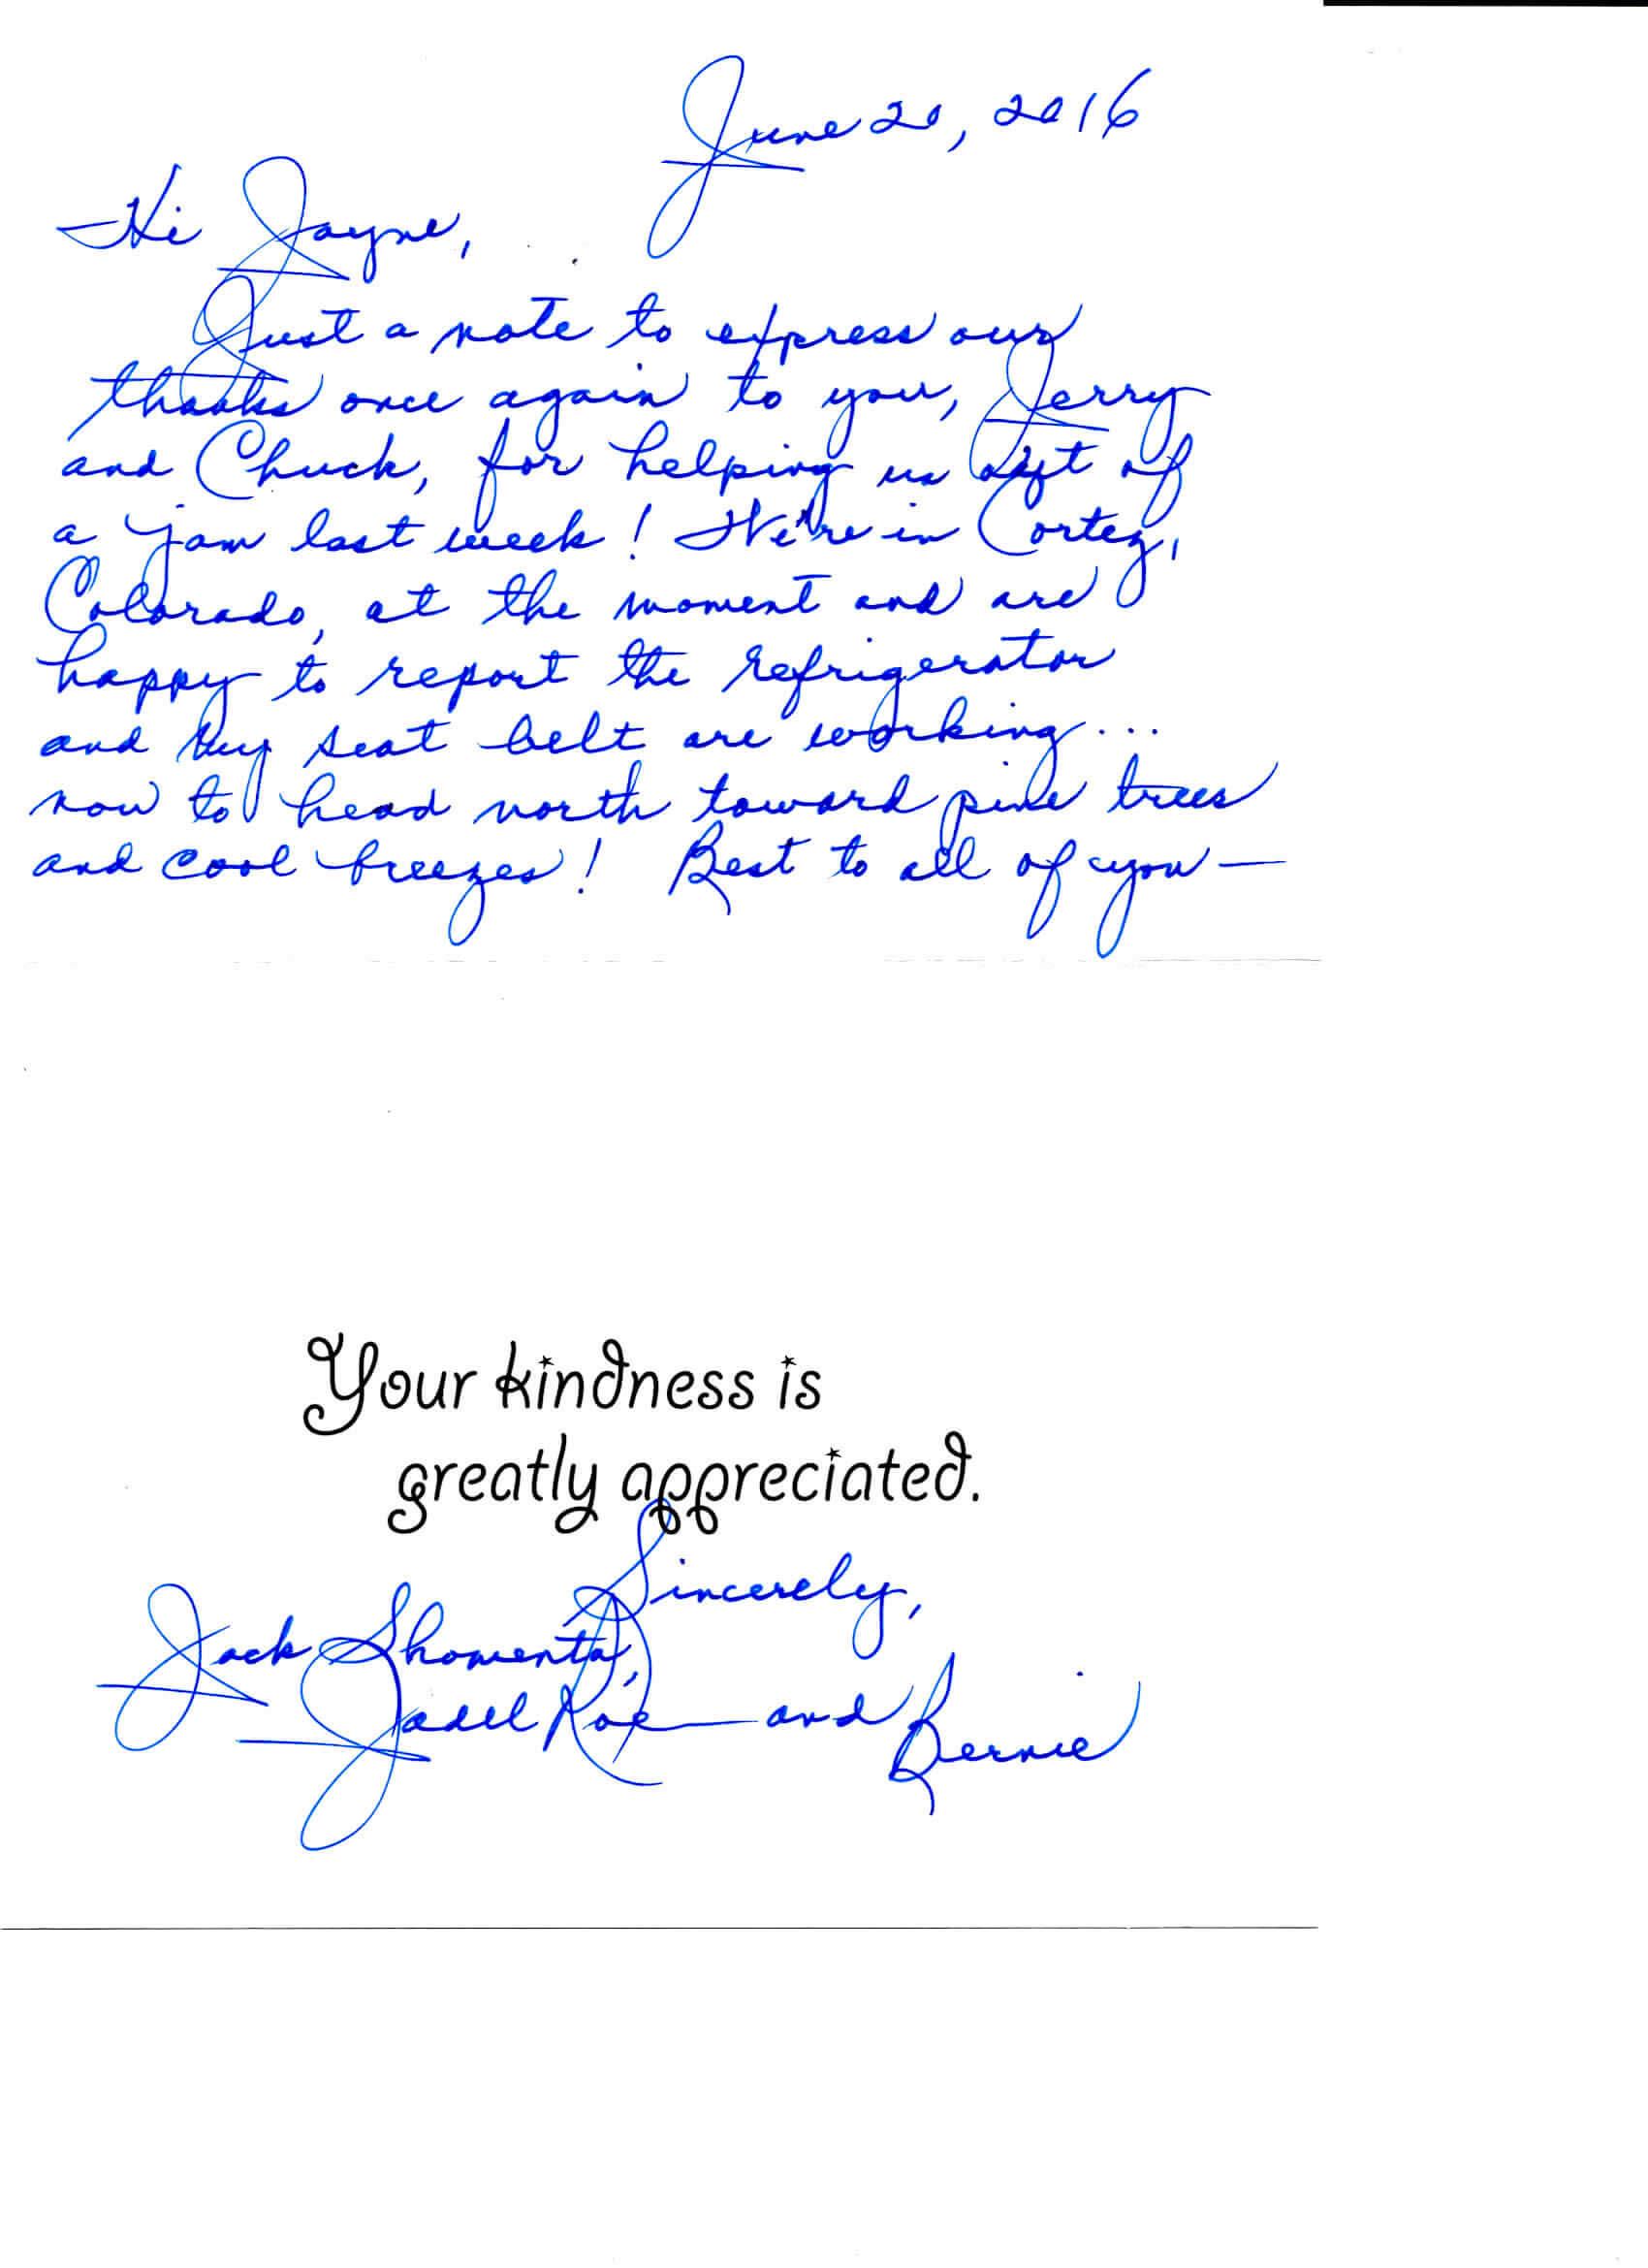 Jack S. Letter